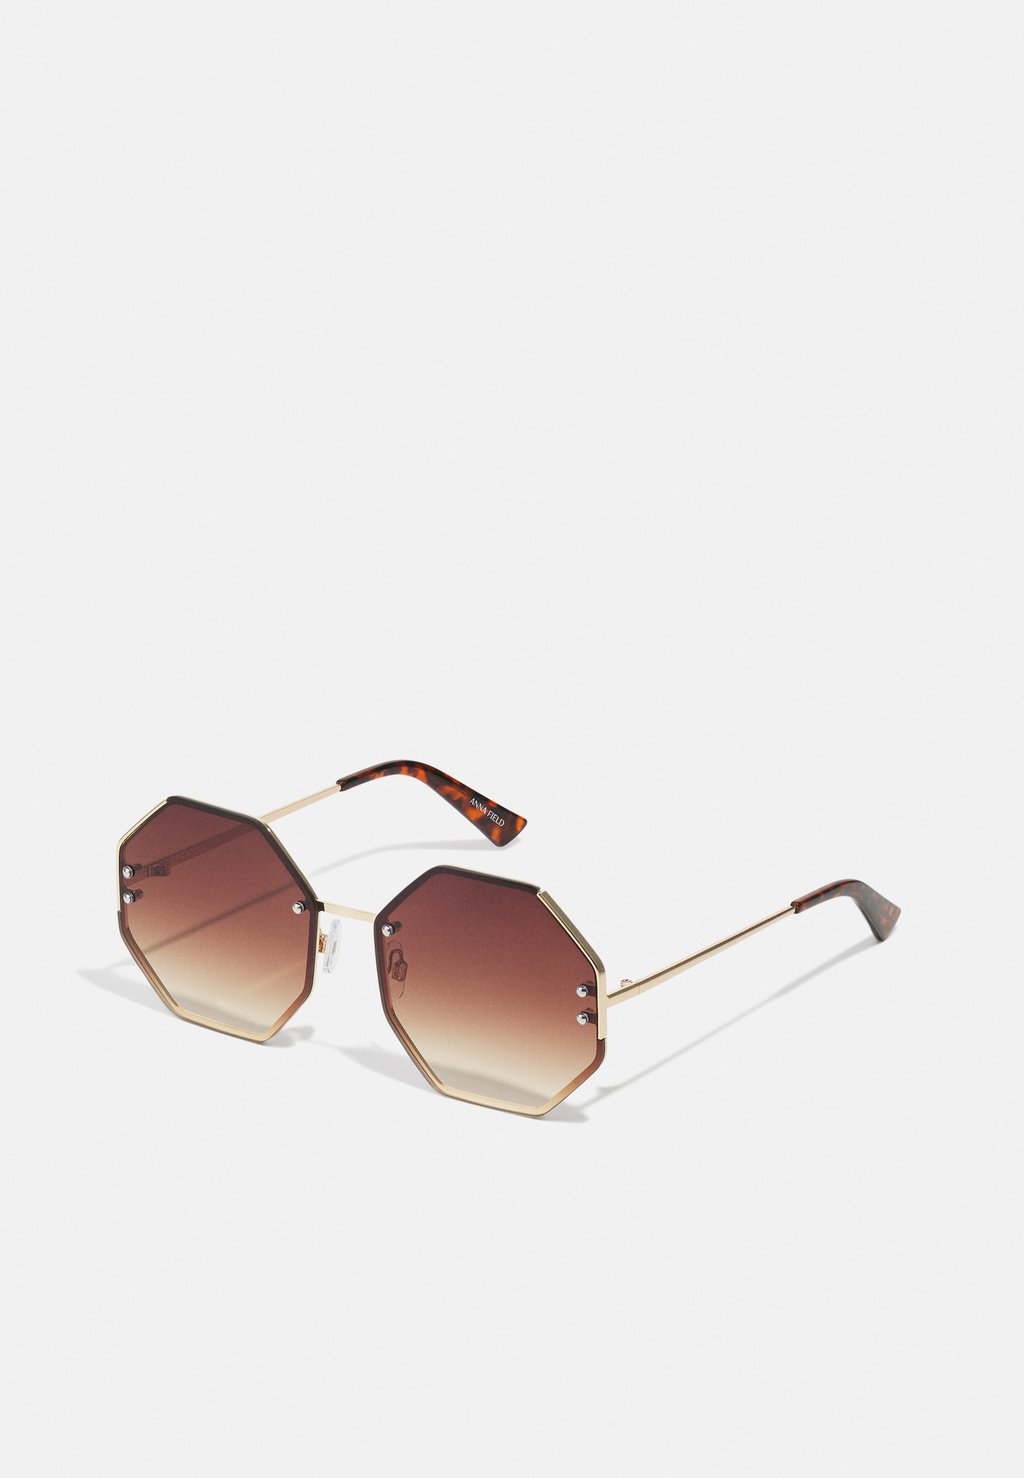 Солнцезащитные очки Anna Field, коричневые/золотые цена и фото